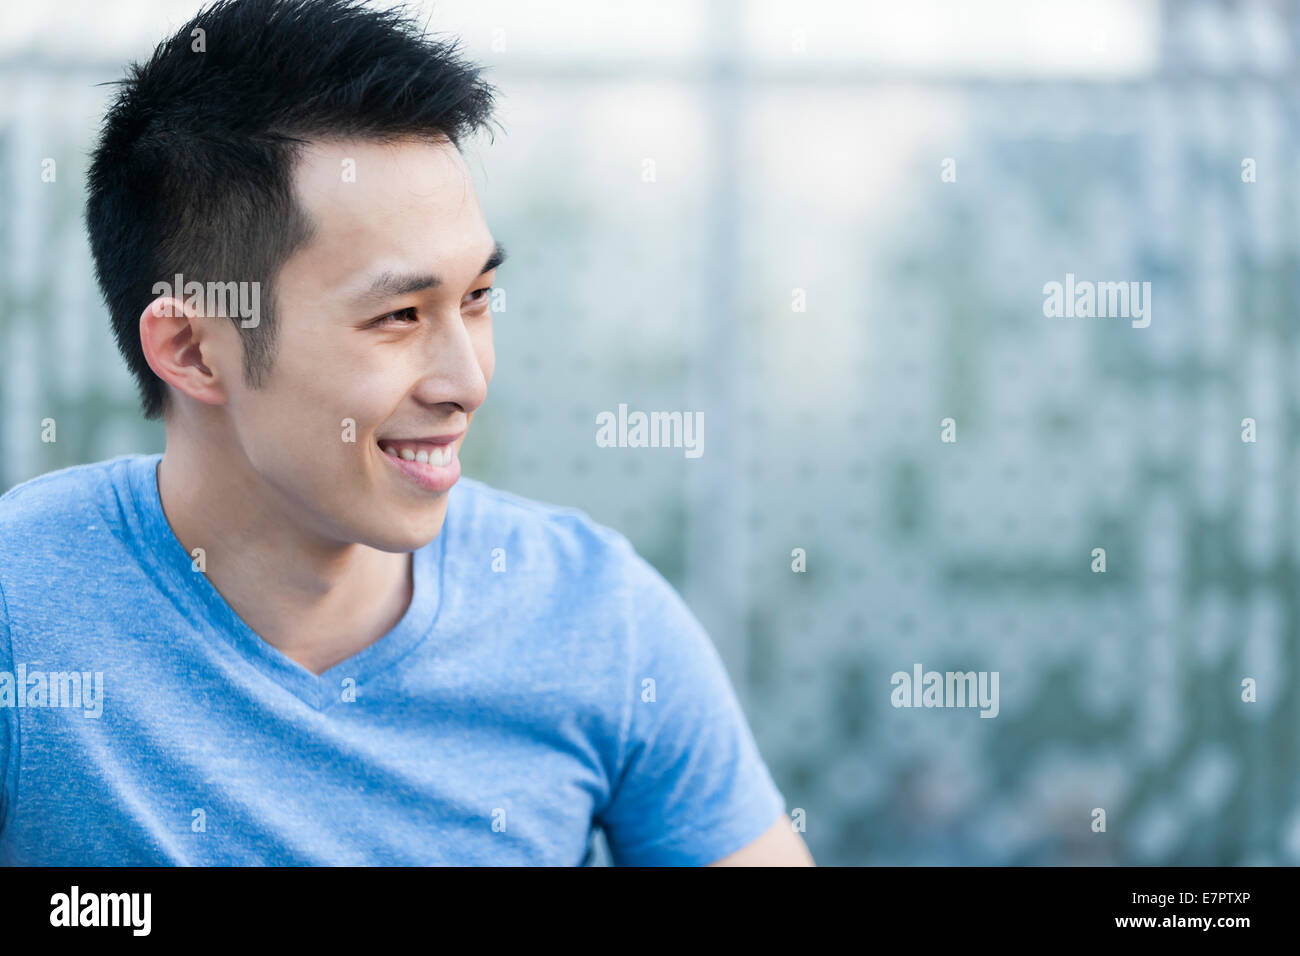 Porträt zuversichtlich jungen asiatischen Mannes im Profil, die lächelnd auf blauem Hintergrund mit Textfreiraum Stockfoto